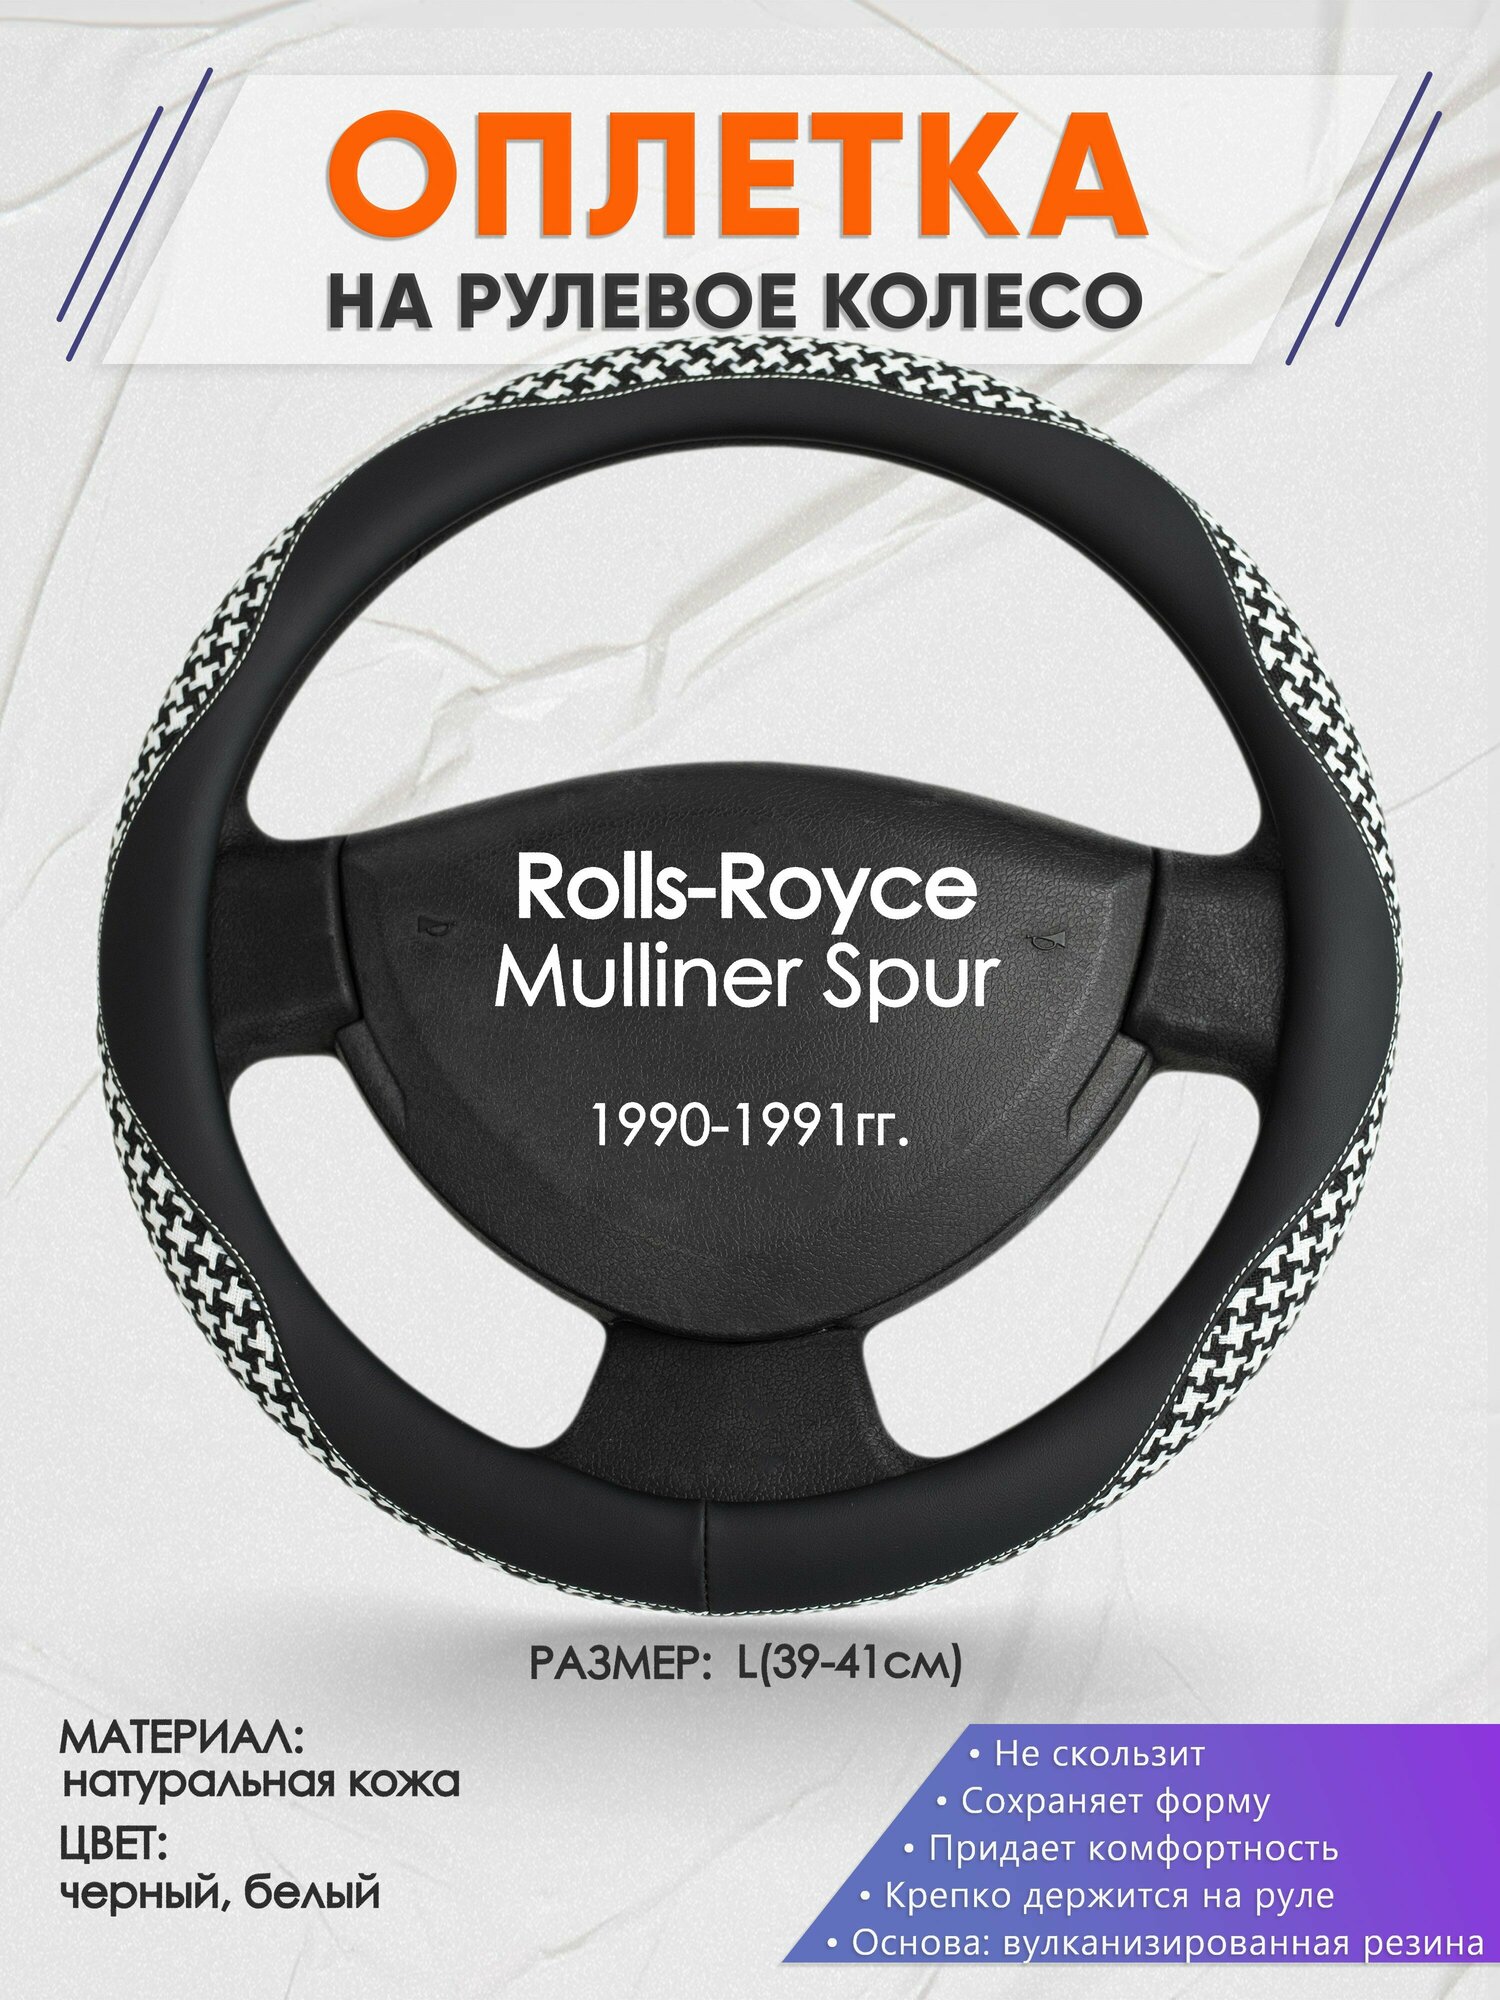 Оплетка на руль для Rolls-Royce Mulliner Spur(РоллсРойс Силвер Спур) 1990-1991, L(39-41см), Натуральная кожа 21